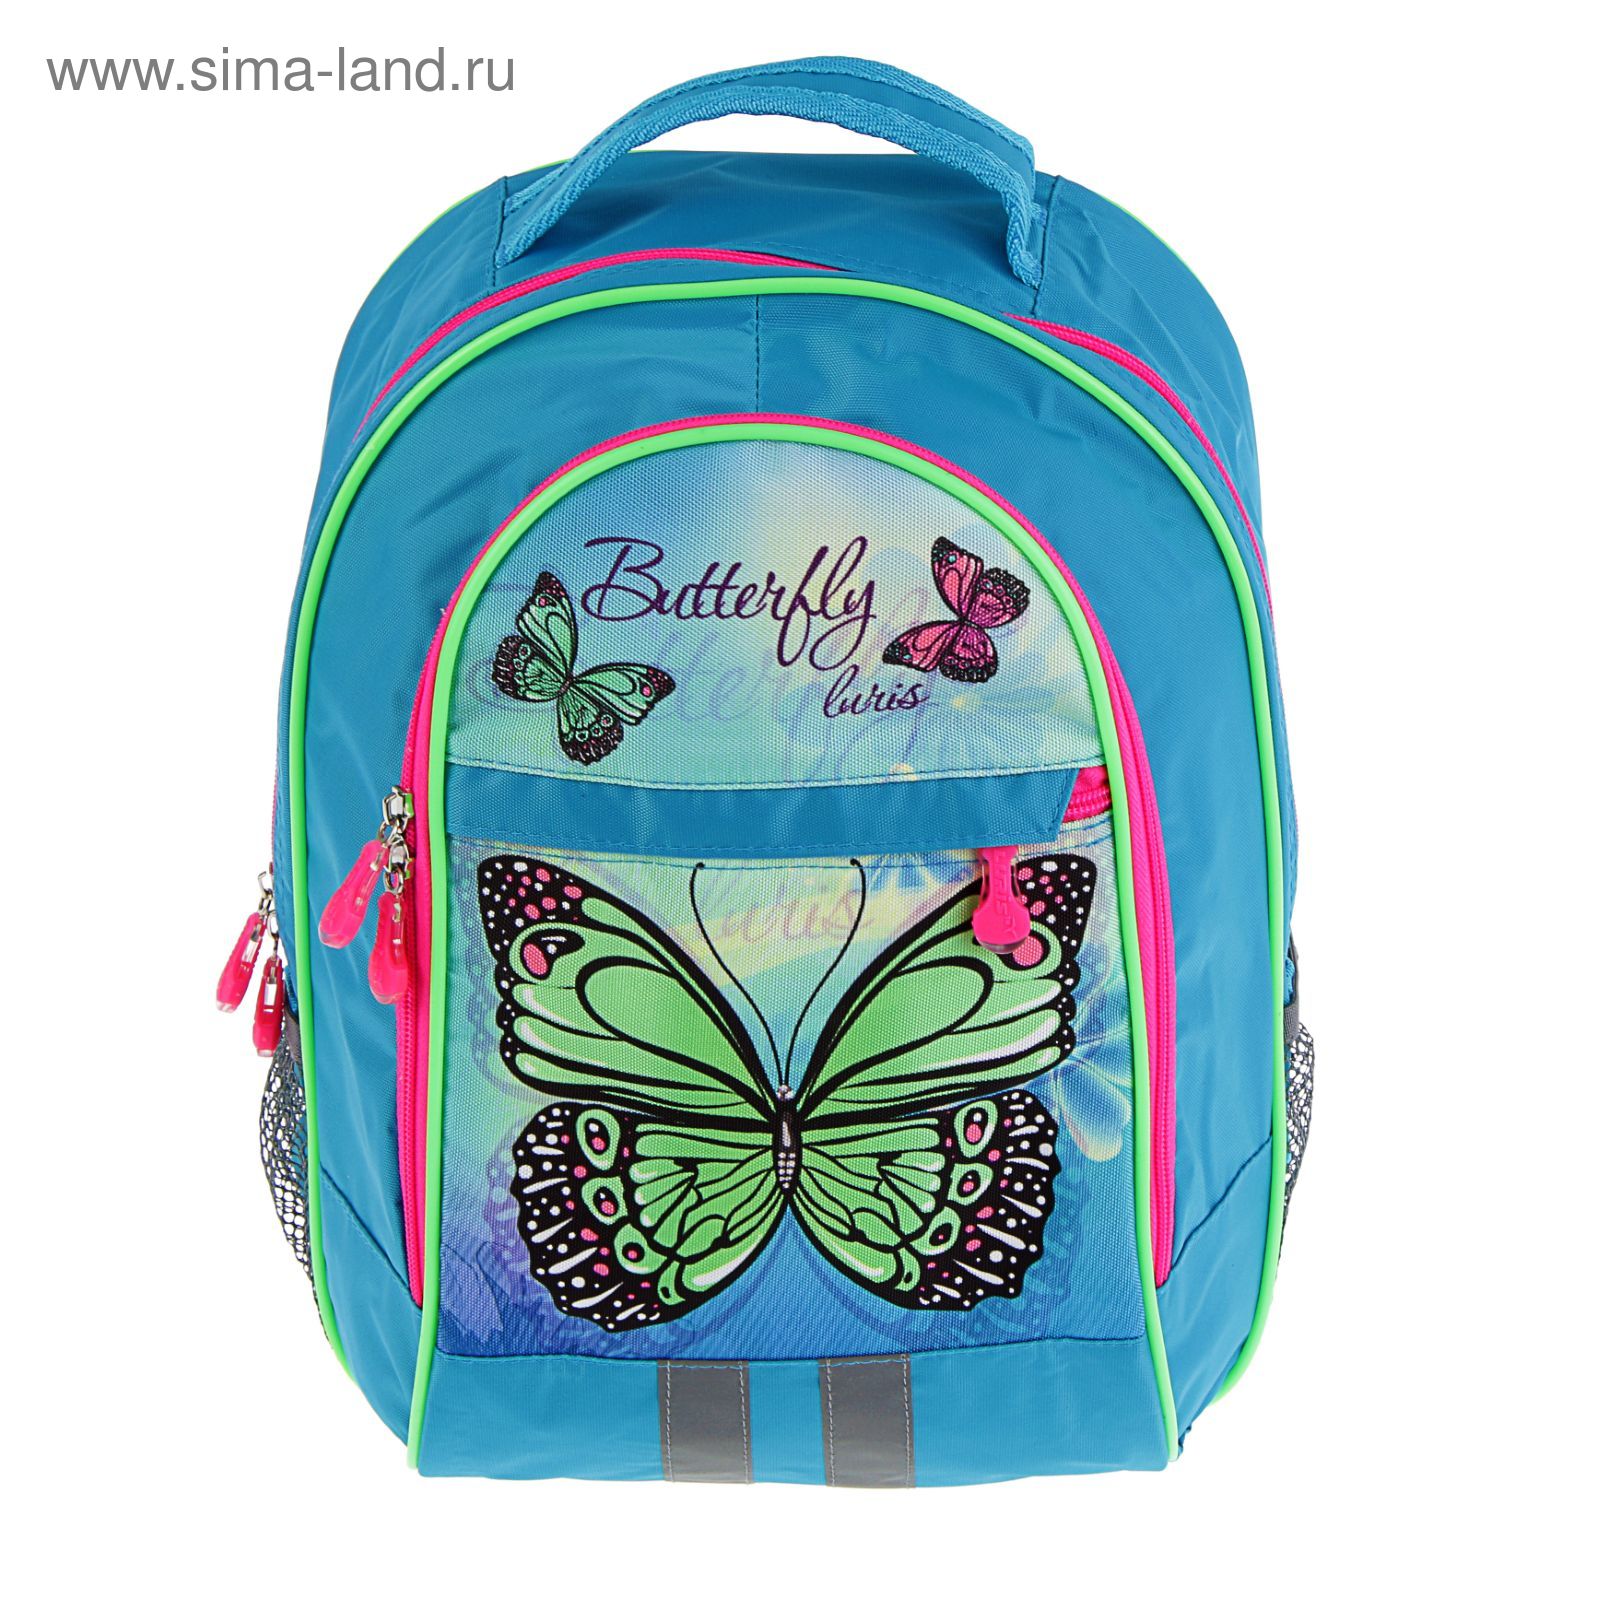 Рюкзак с бабочками для девочки. Магазин бабочка рюкзаки. Ранец школьный с бабочкой Luris. Luris рюкзак школьный с бабочкой. Магазин бабочка москва